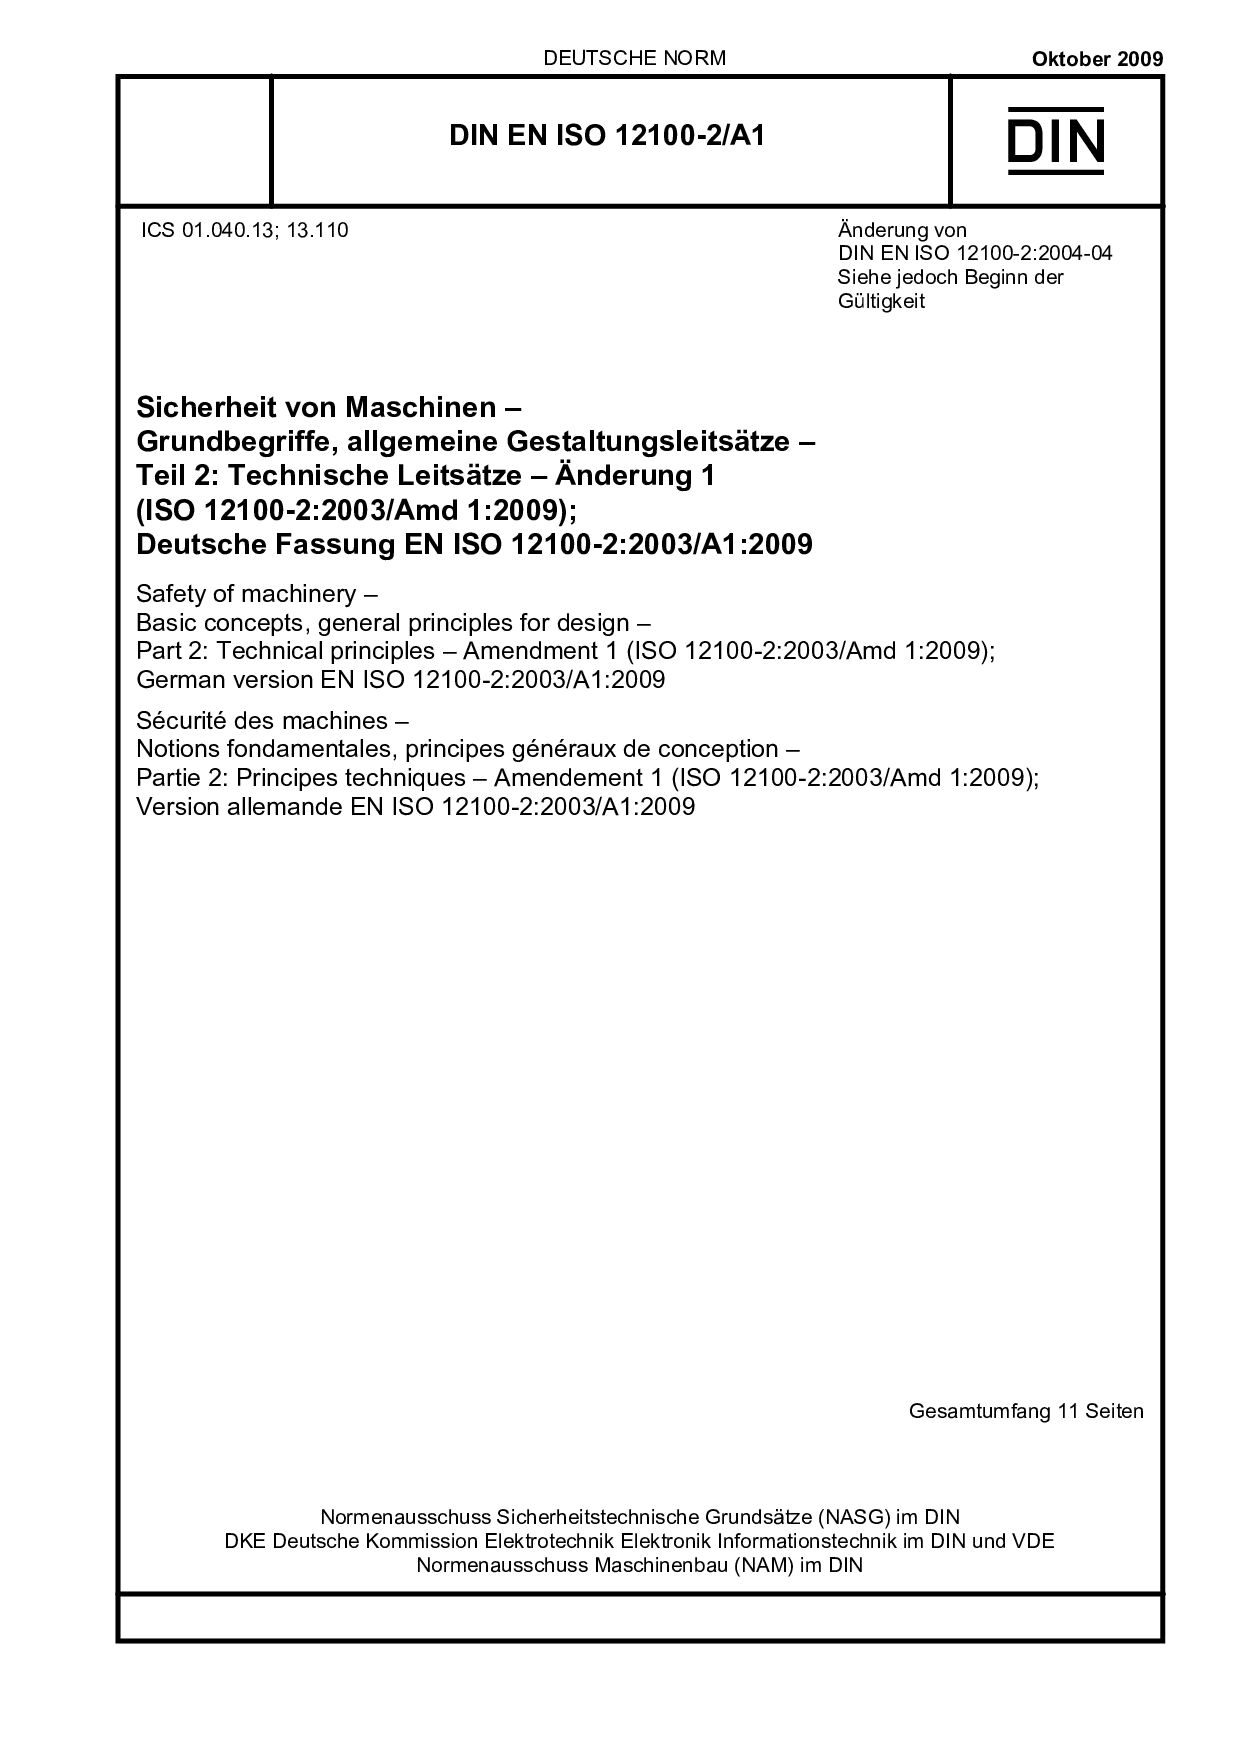 DIN EN ISO 12100-2/A1:2009封面图